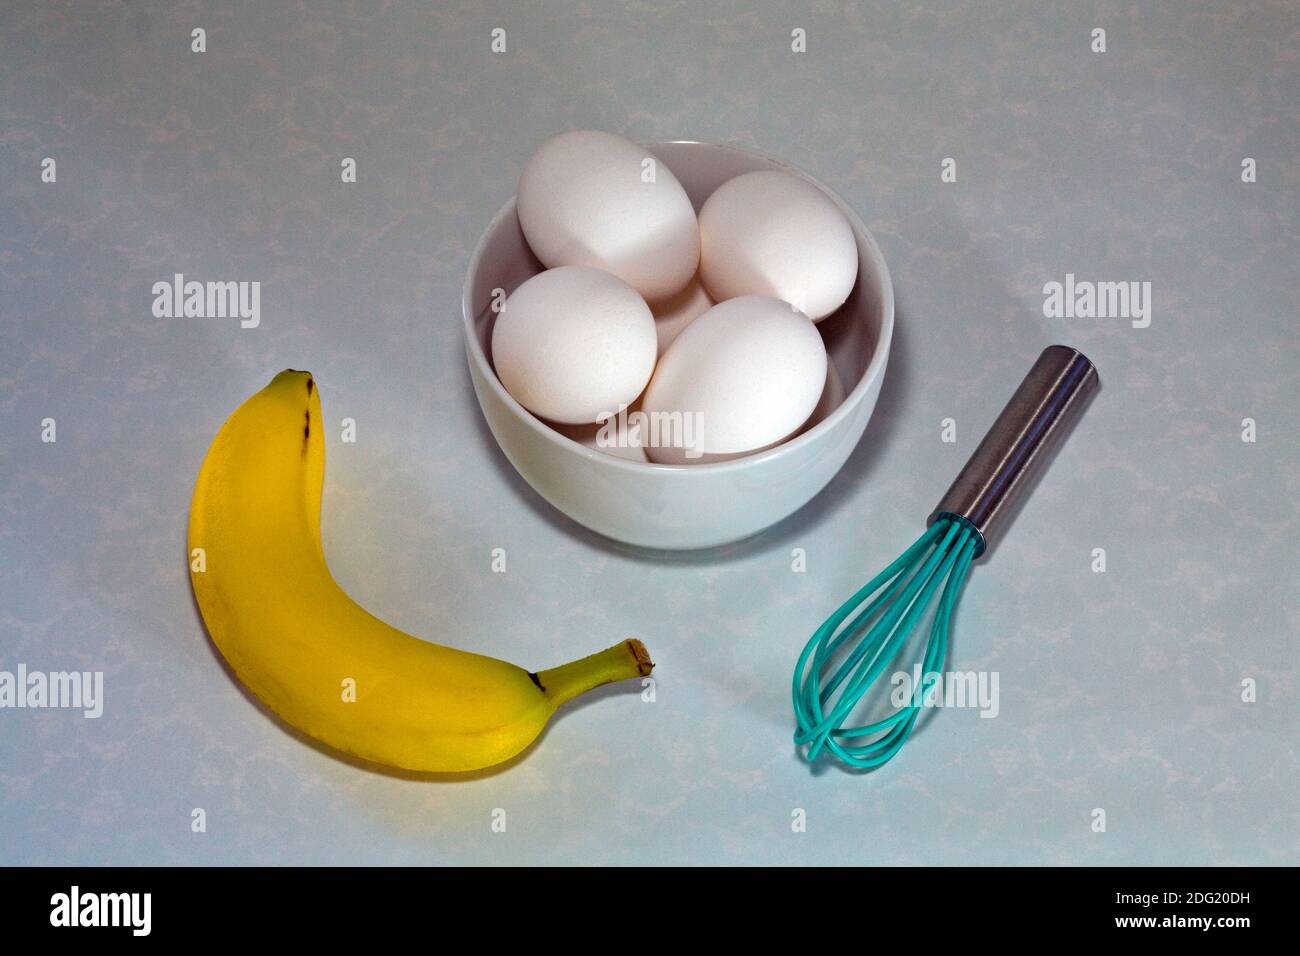 Frische Eier, ein Rührgerät, eine Banane und eine Eieruhr, um ein gesundes Frühstück vorzubereiten. Stockfoto